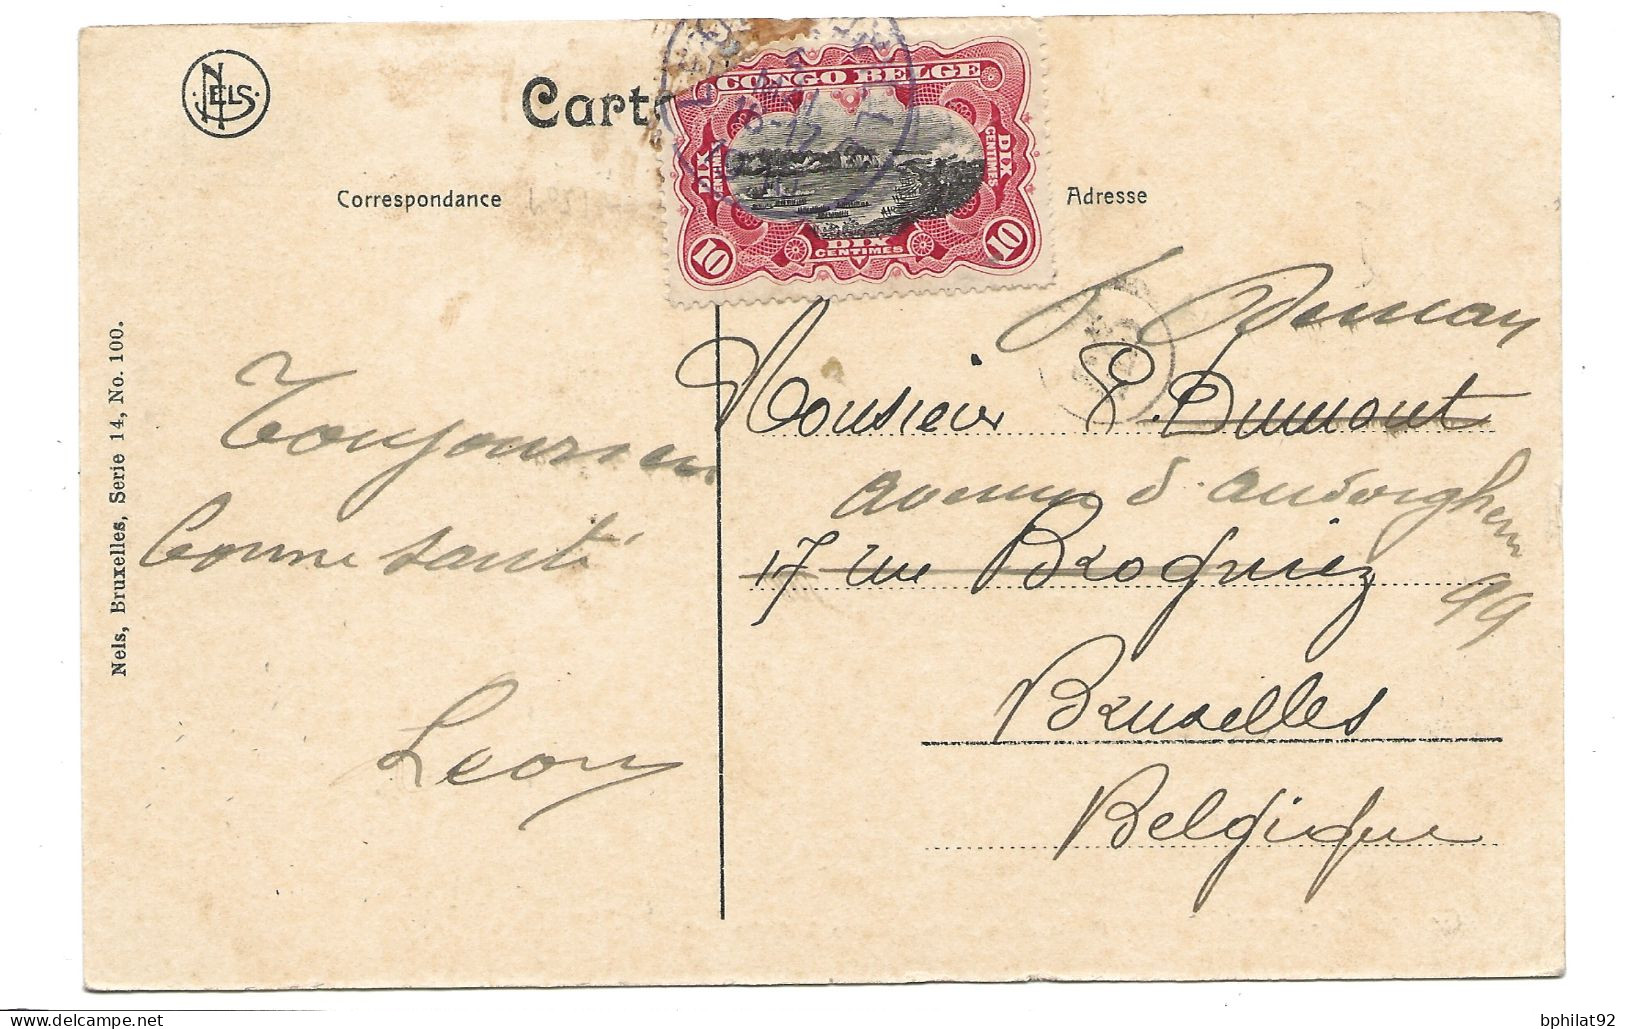 !!! CONGO, CPA DE 1910, DÉPART DE LÉOPOLDVILLE POUR BRUXELLES (BELGIQUE) - Covers & Documents